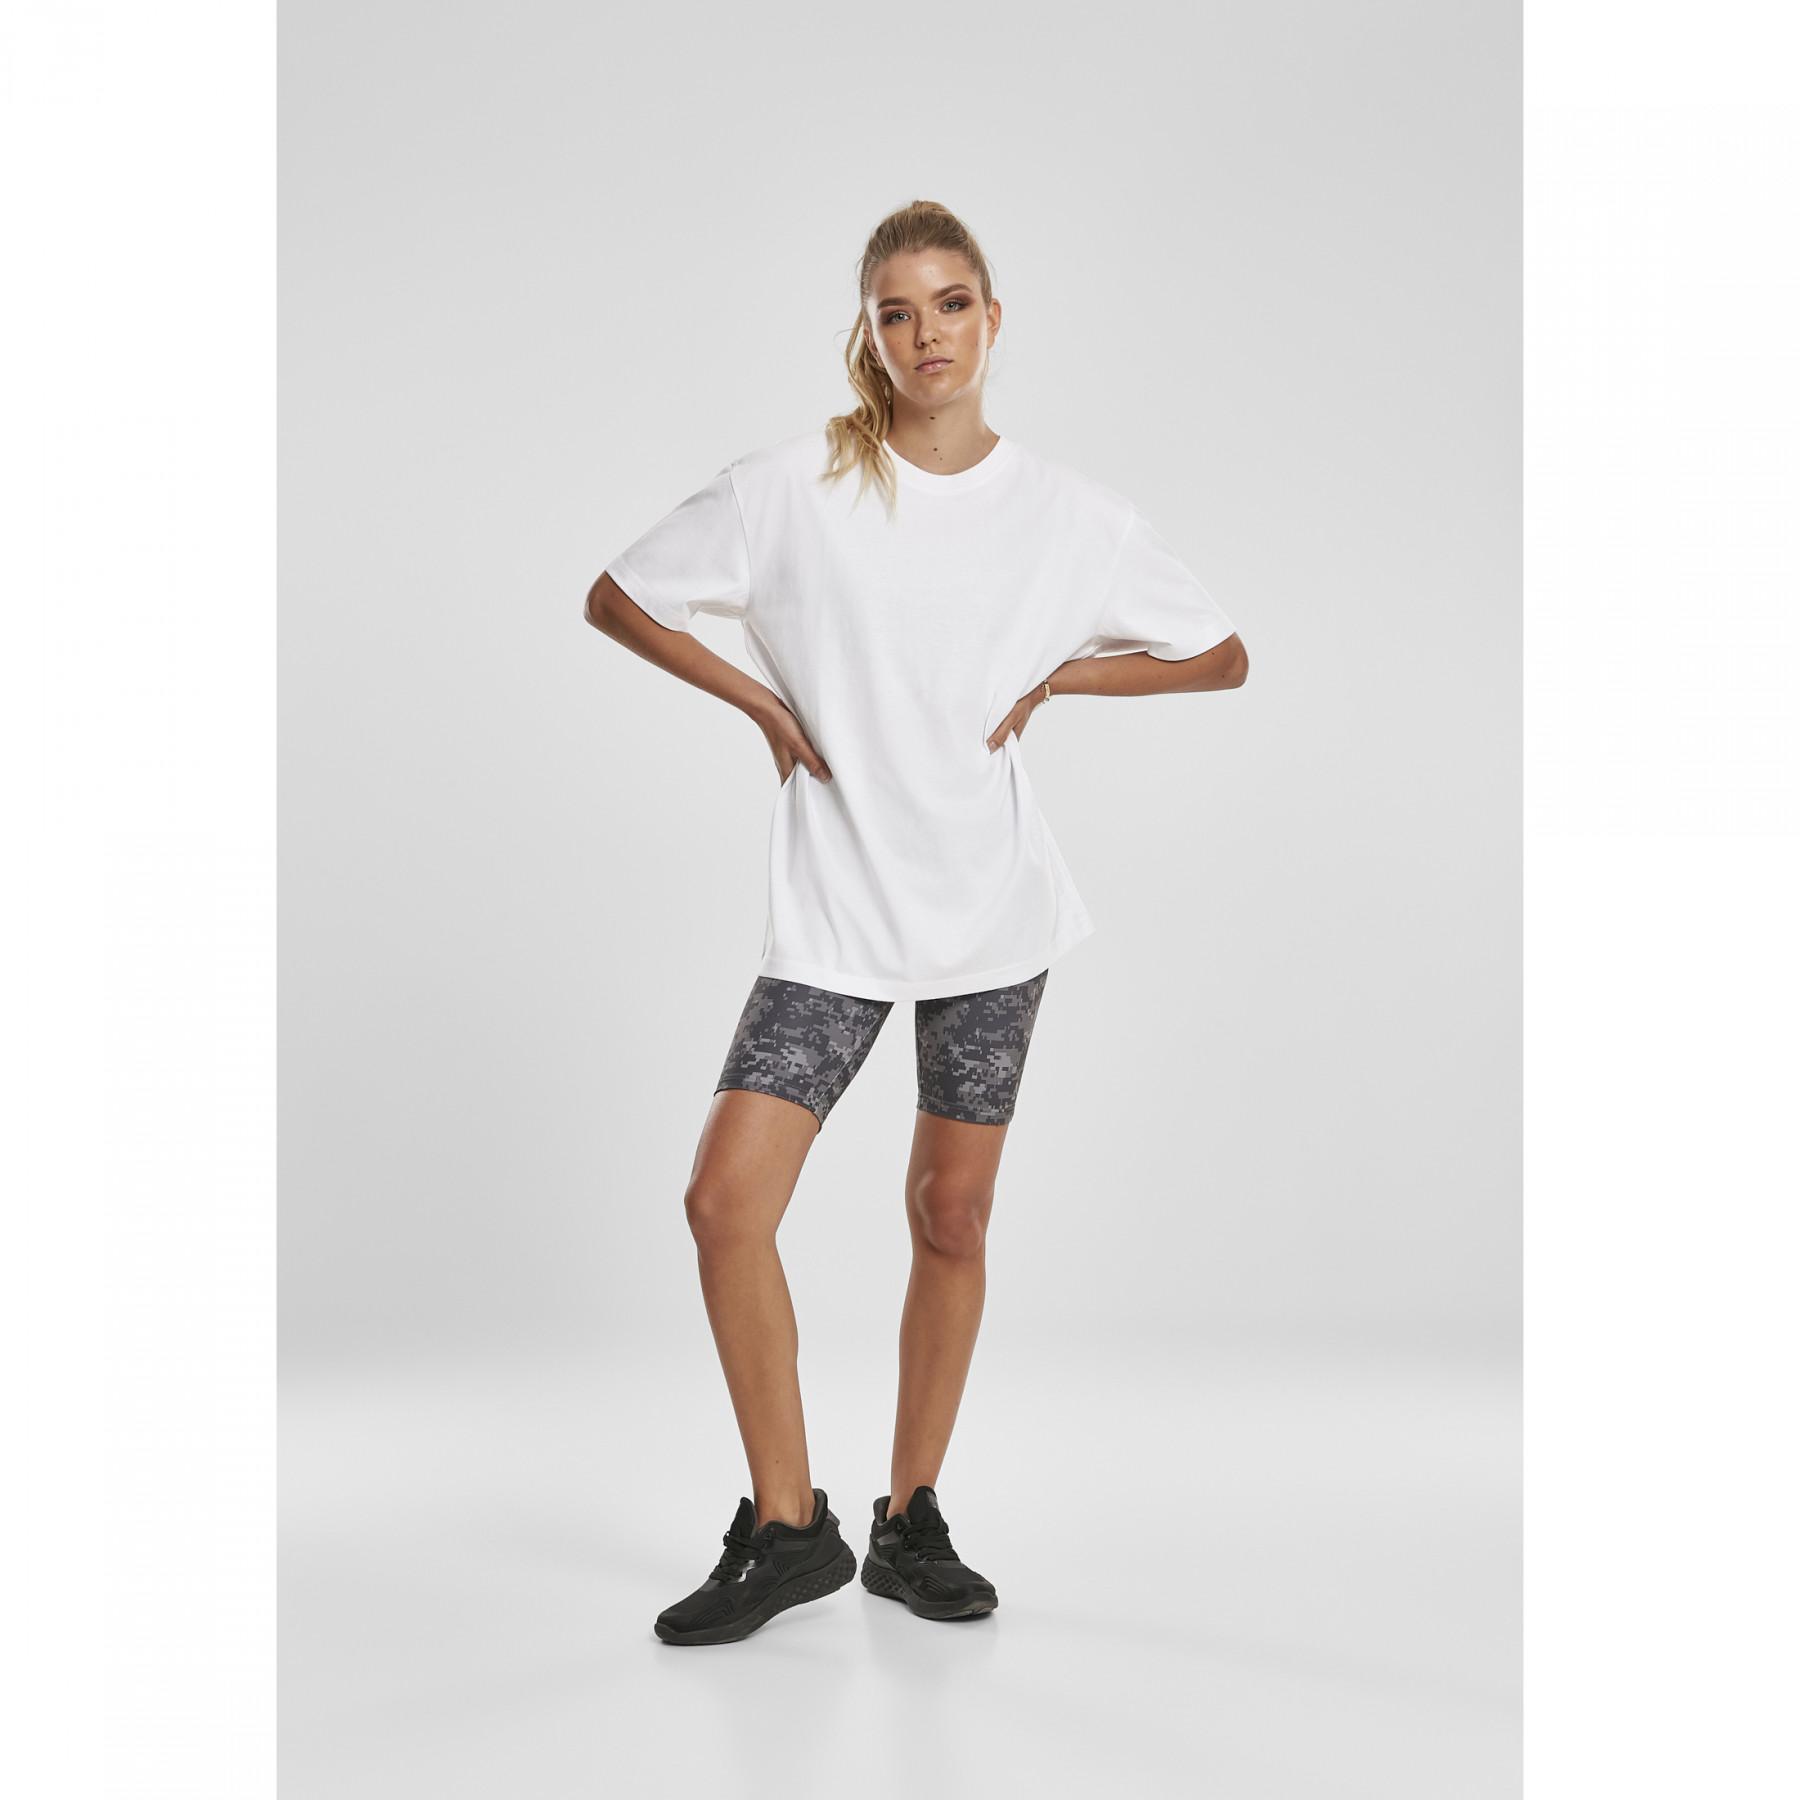 Cycling shorts for women Urban Clothing Classics Skirts waist - - camo Shorts tech - Women & high